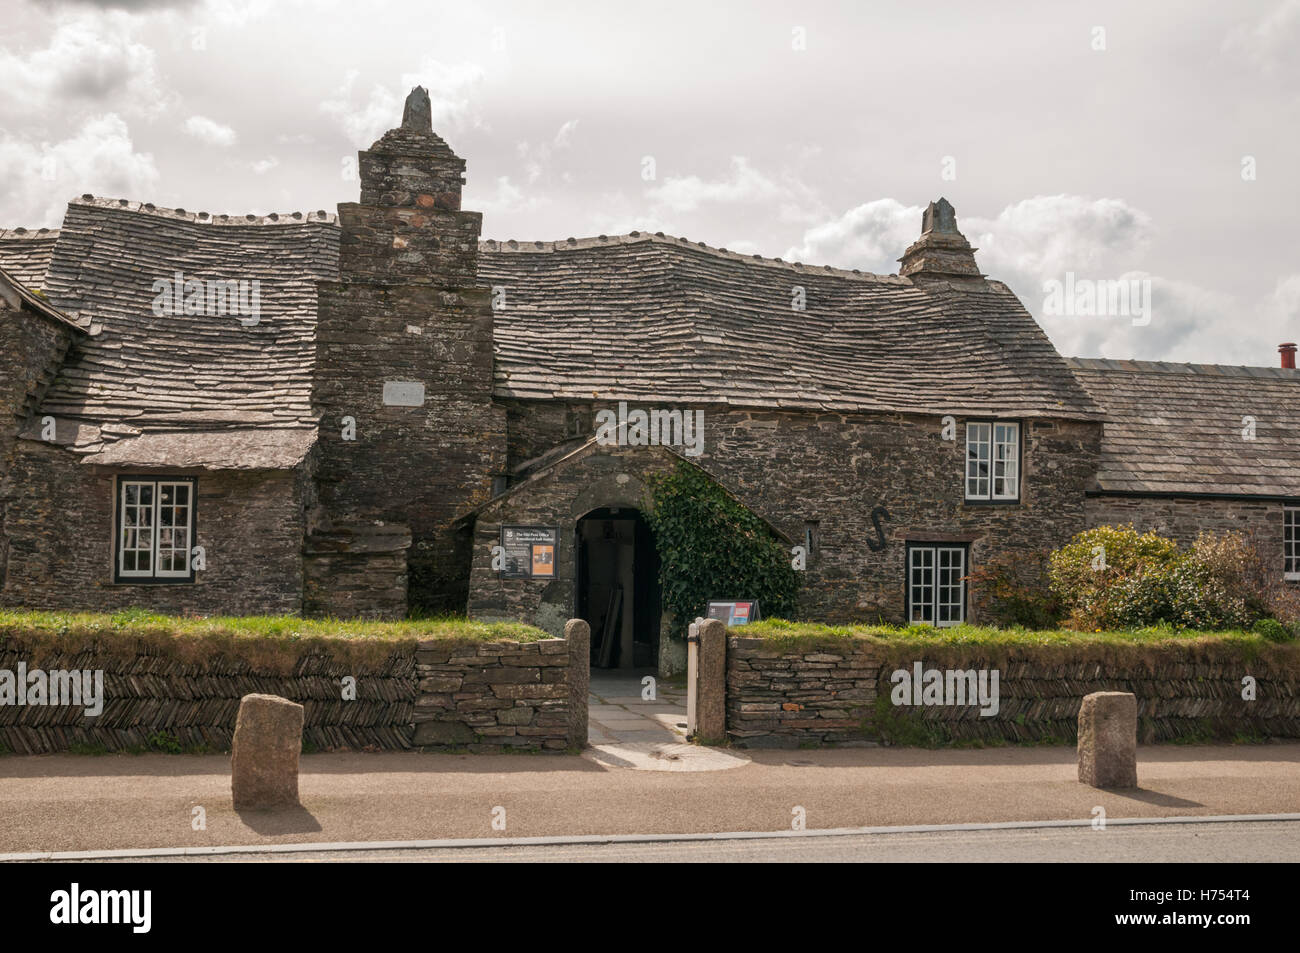 L'ancien bureau de poste, Tintagel, en Cornouailles. Savoirs traditionnels, pierre et ardoise maison médiévale longue. Propriété du National Trust. Banque D'Images